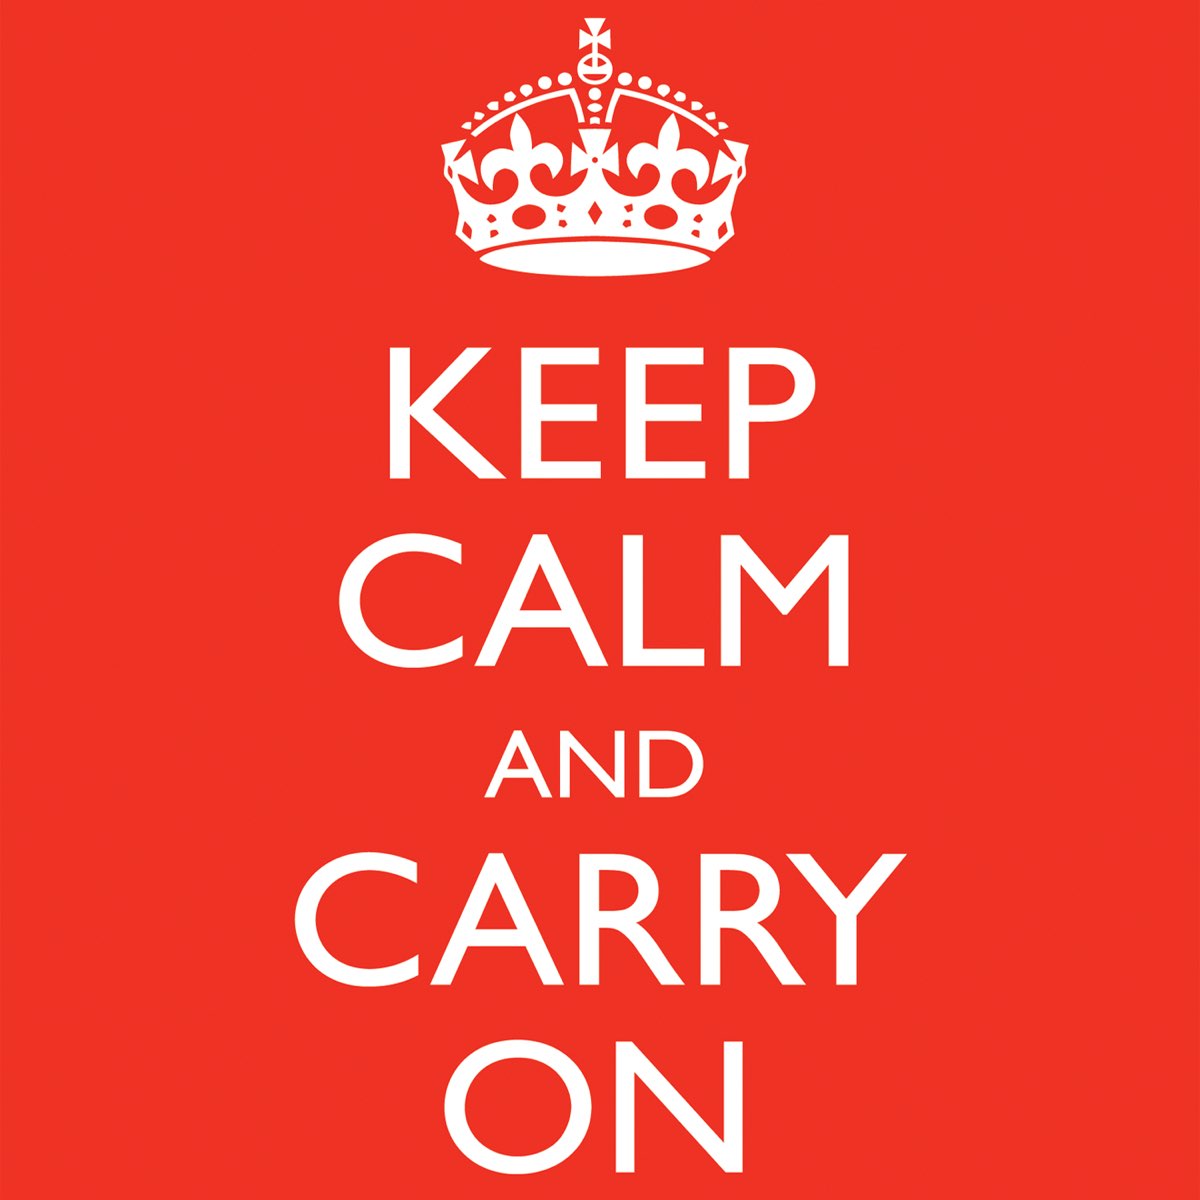 Keep calm на русский. Keep Calm. КИП Калм энд Керри он. Keep Calm and carry on Мем. Keep Calm без фона.